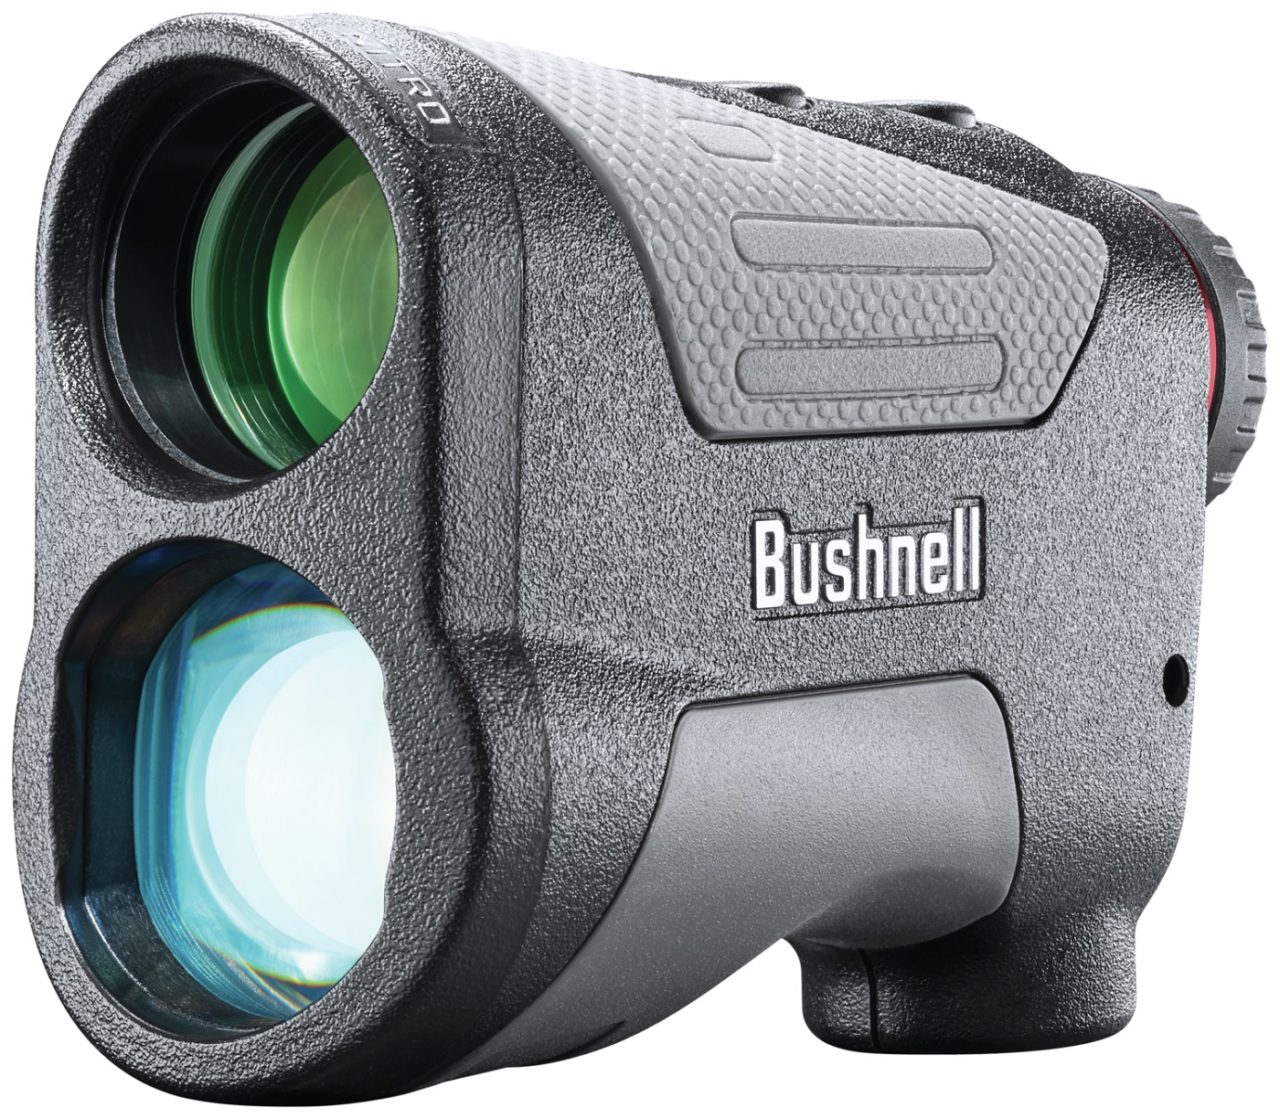 Bushnell Announces New Laser Rangefinder Models